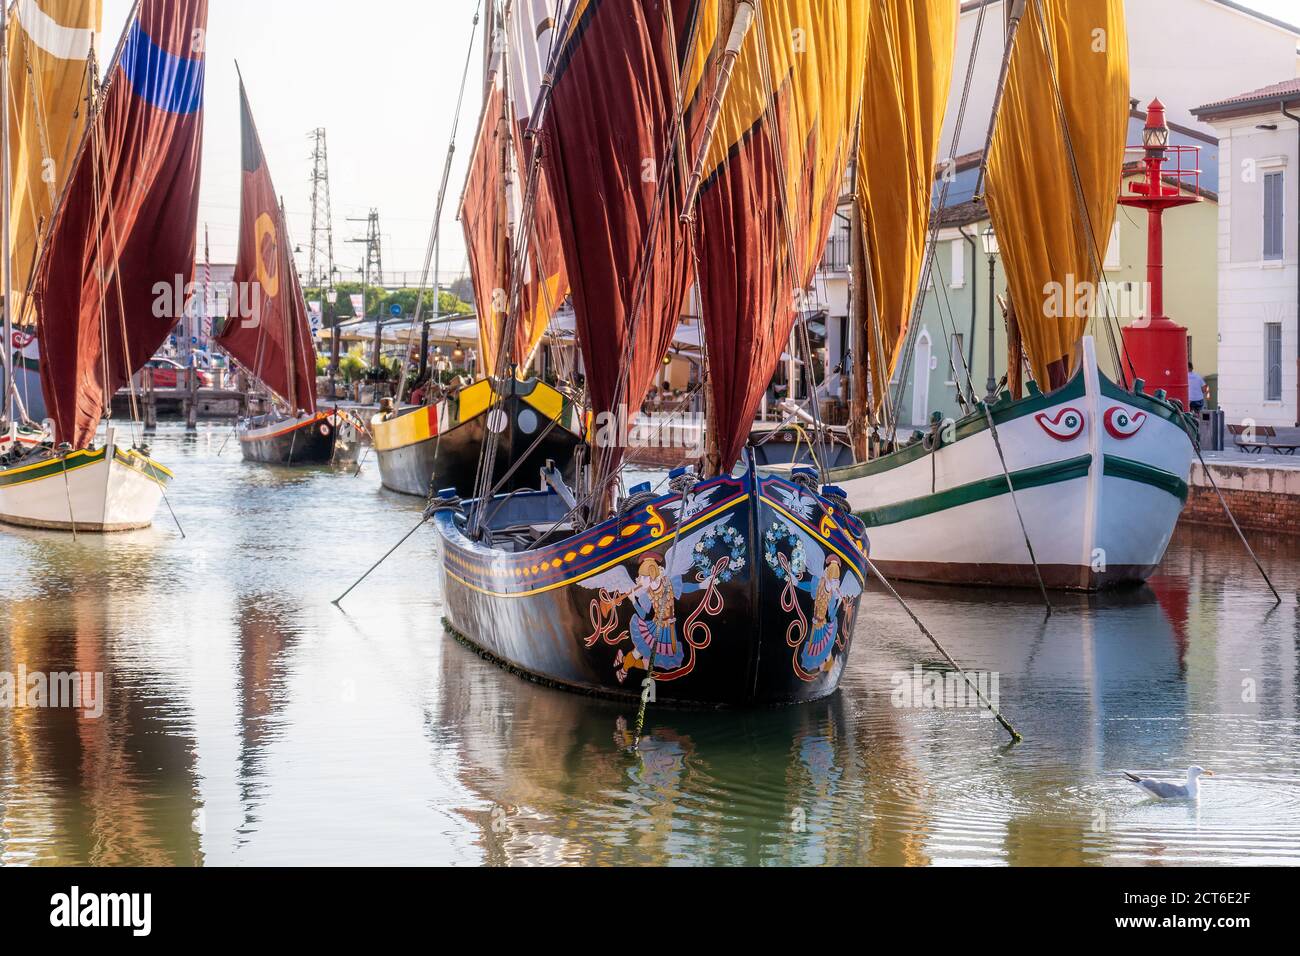 Cesenatico, Emilia Romagna, Italia, Julio 2020: Barco colorido en el puerto del canal de Cesenatico. Foto de stock